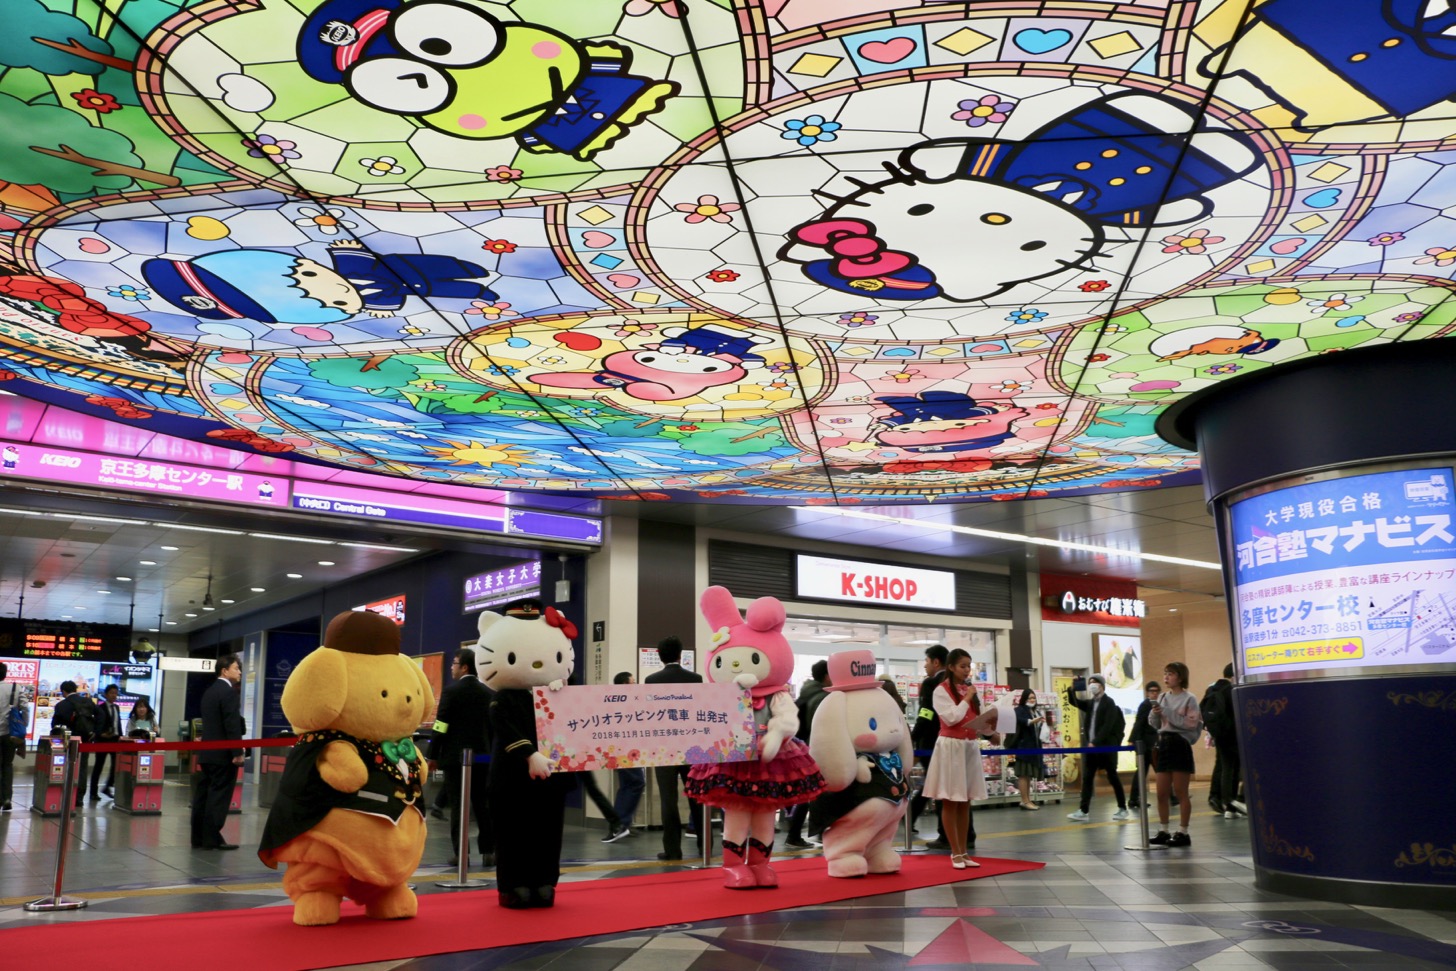 京王多摩センター駅改札前の天井にはサンリオキャラクターのステンドグラスがあり、フォトスポットとして人気です！